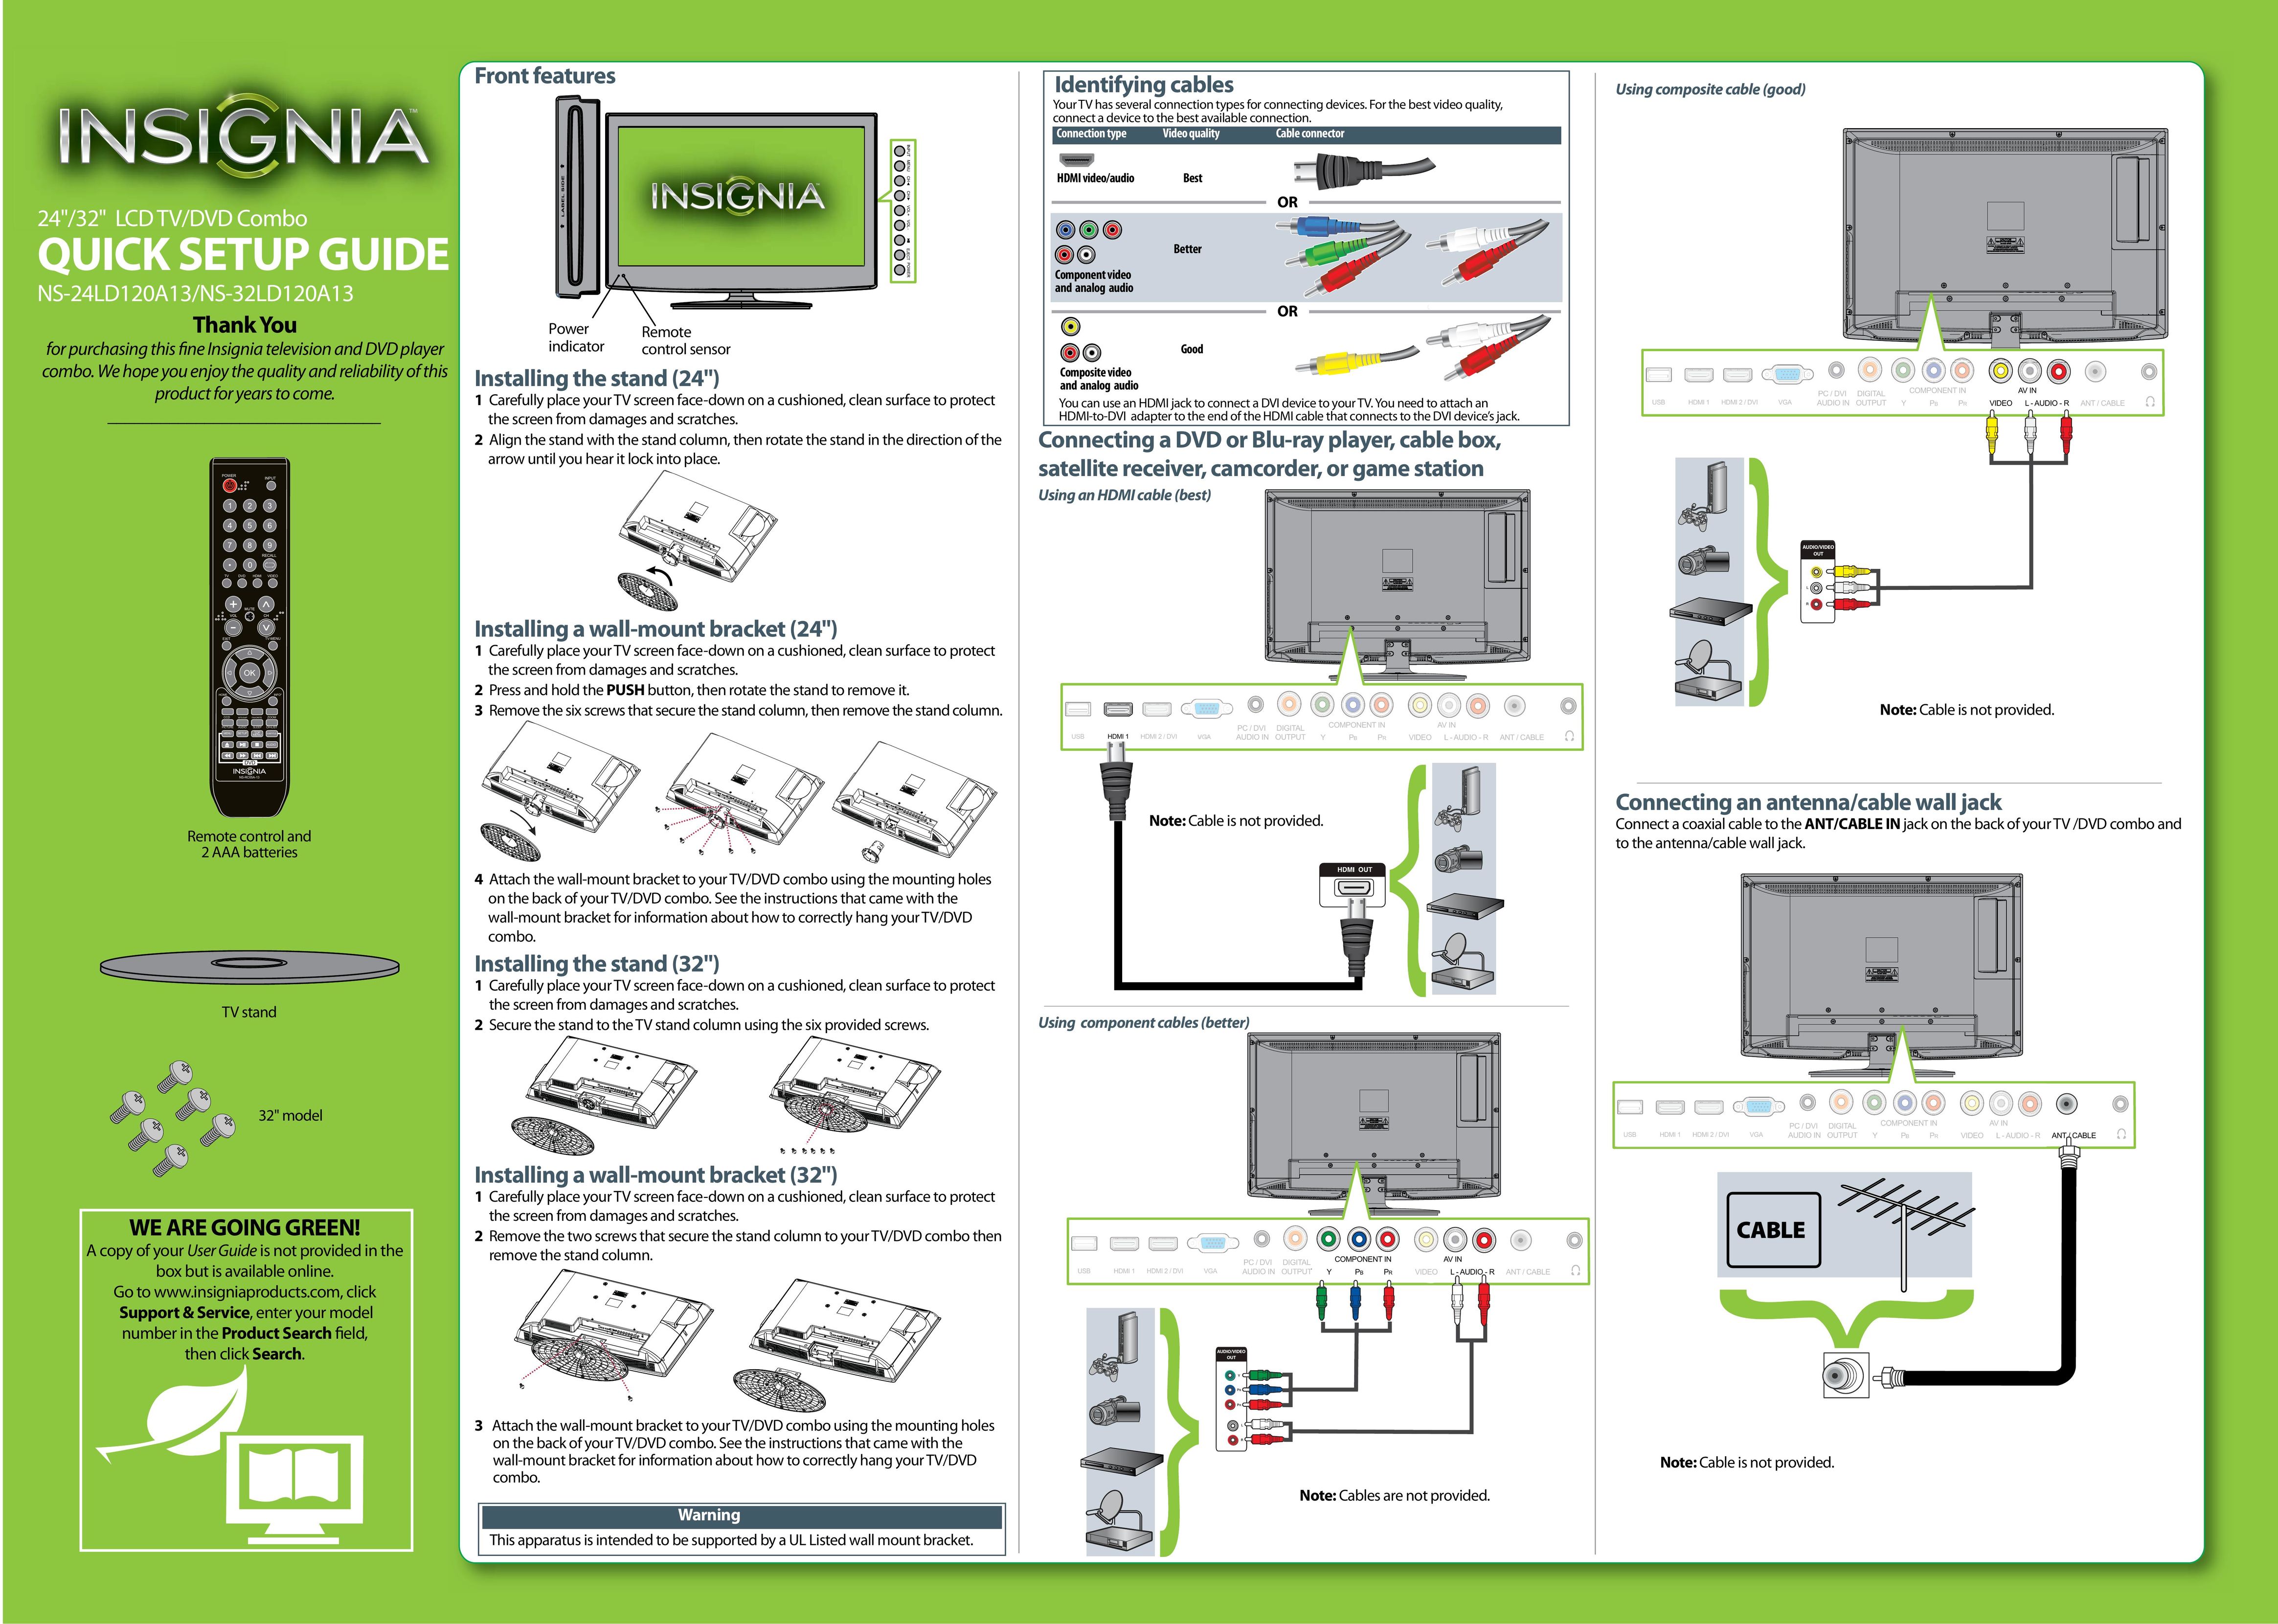 Insignia NS-24LD120A13 Flat Panel Television User Manual